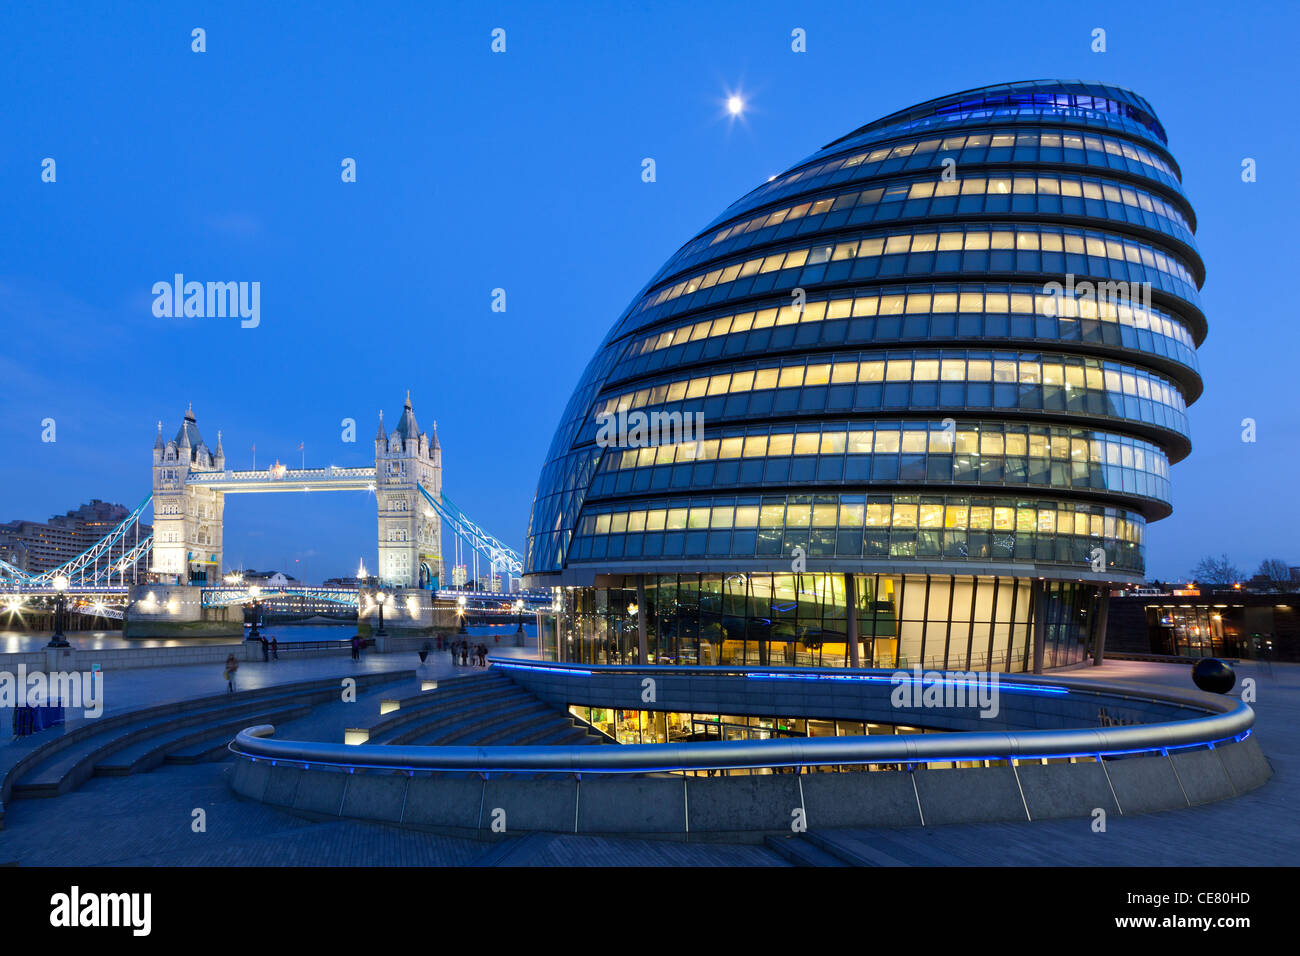 City Hall, sede de la Greater London Authority (GLA) y el Tower Bridge, Londres, justo después de la puesta del sol Foto de stock